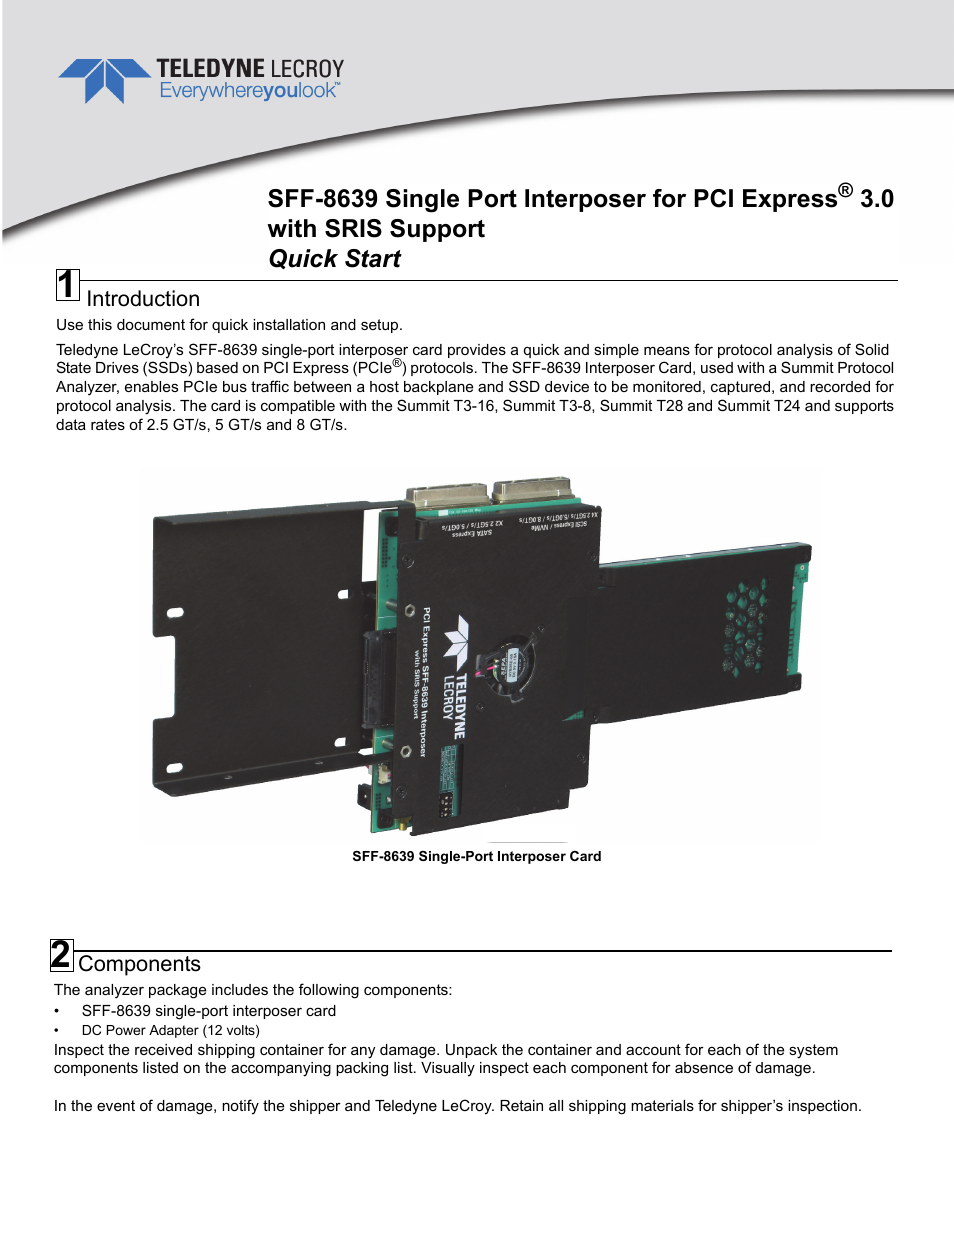 PCIe Gen3 SFF-8639 Interposer With SRIS Quick Start